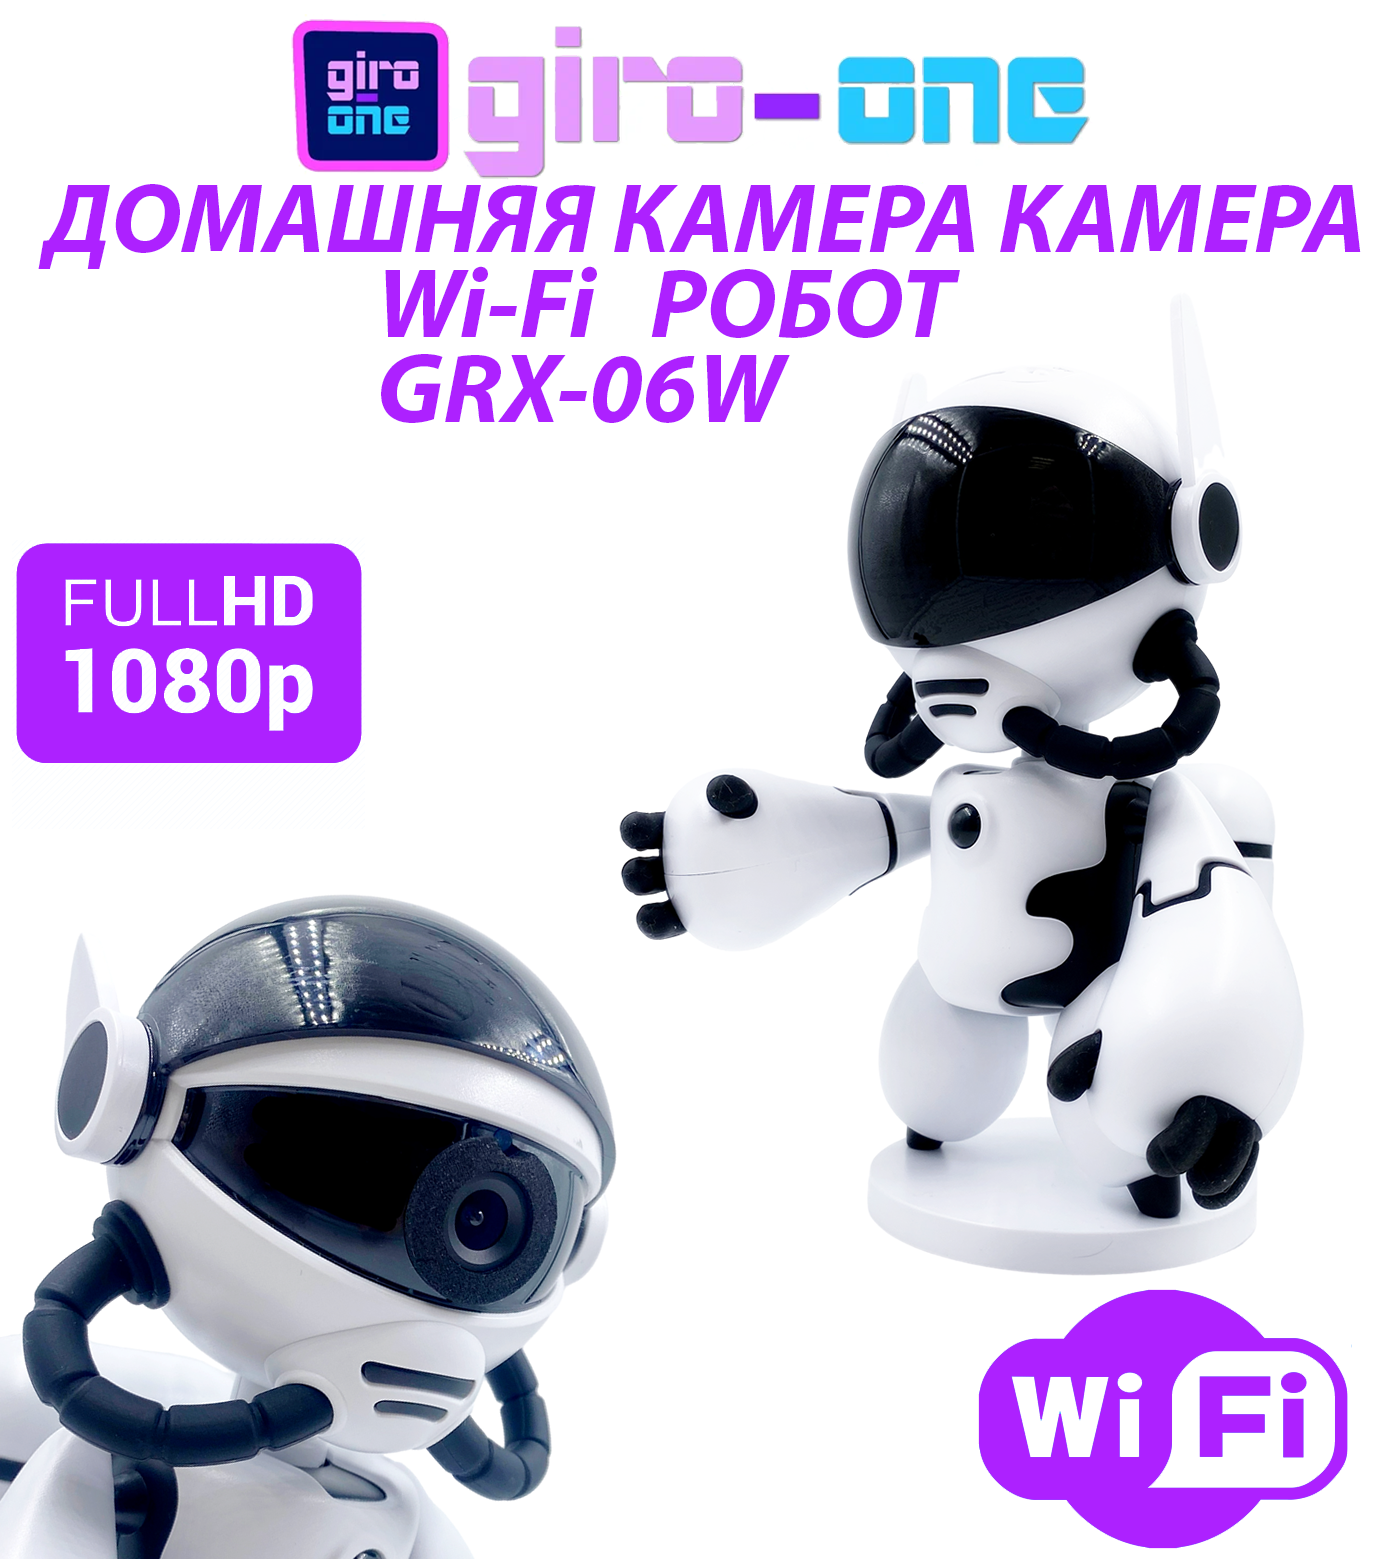 Домашняя Wi-Fi Камера Робот GRX-06W / Игрушка Робот / Видеоняня (цвет - белый)